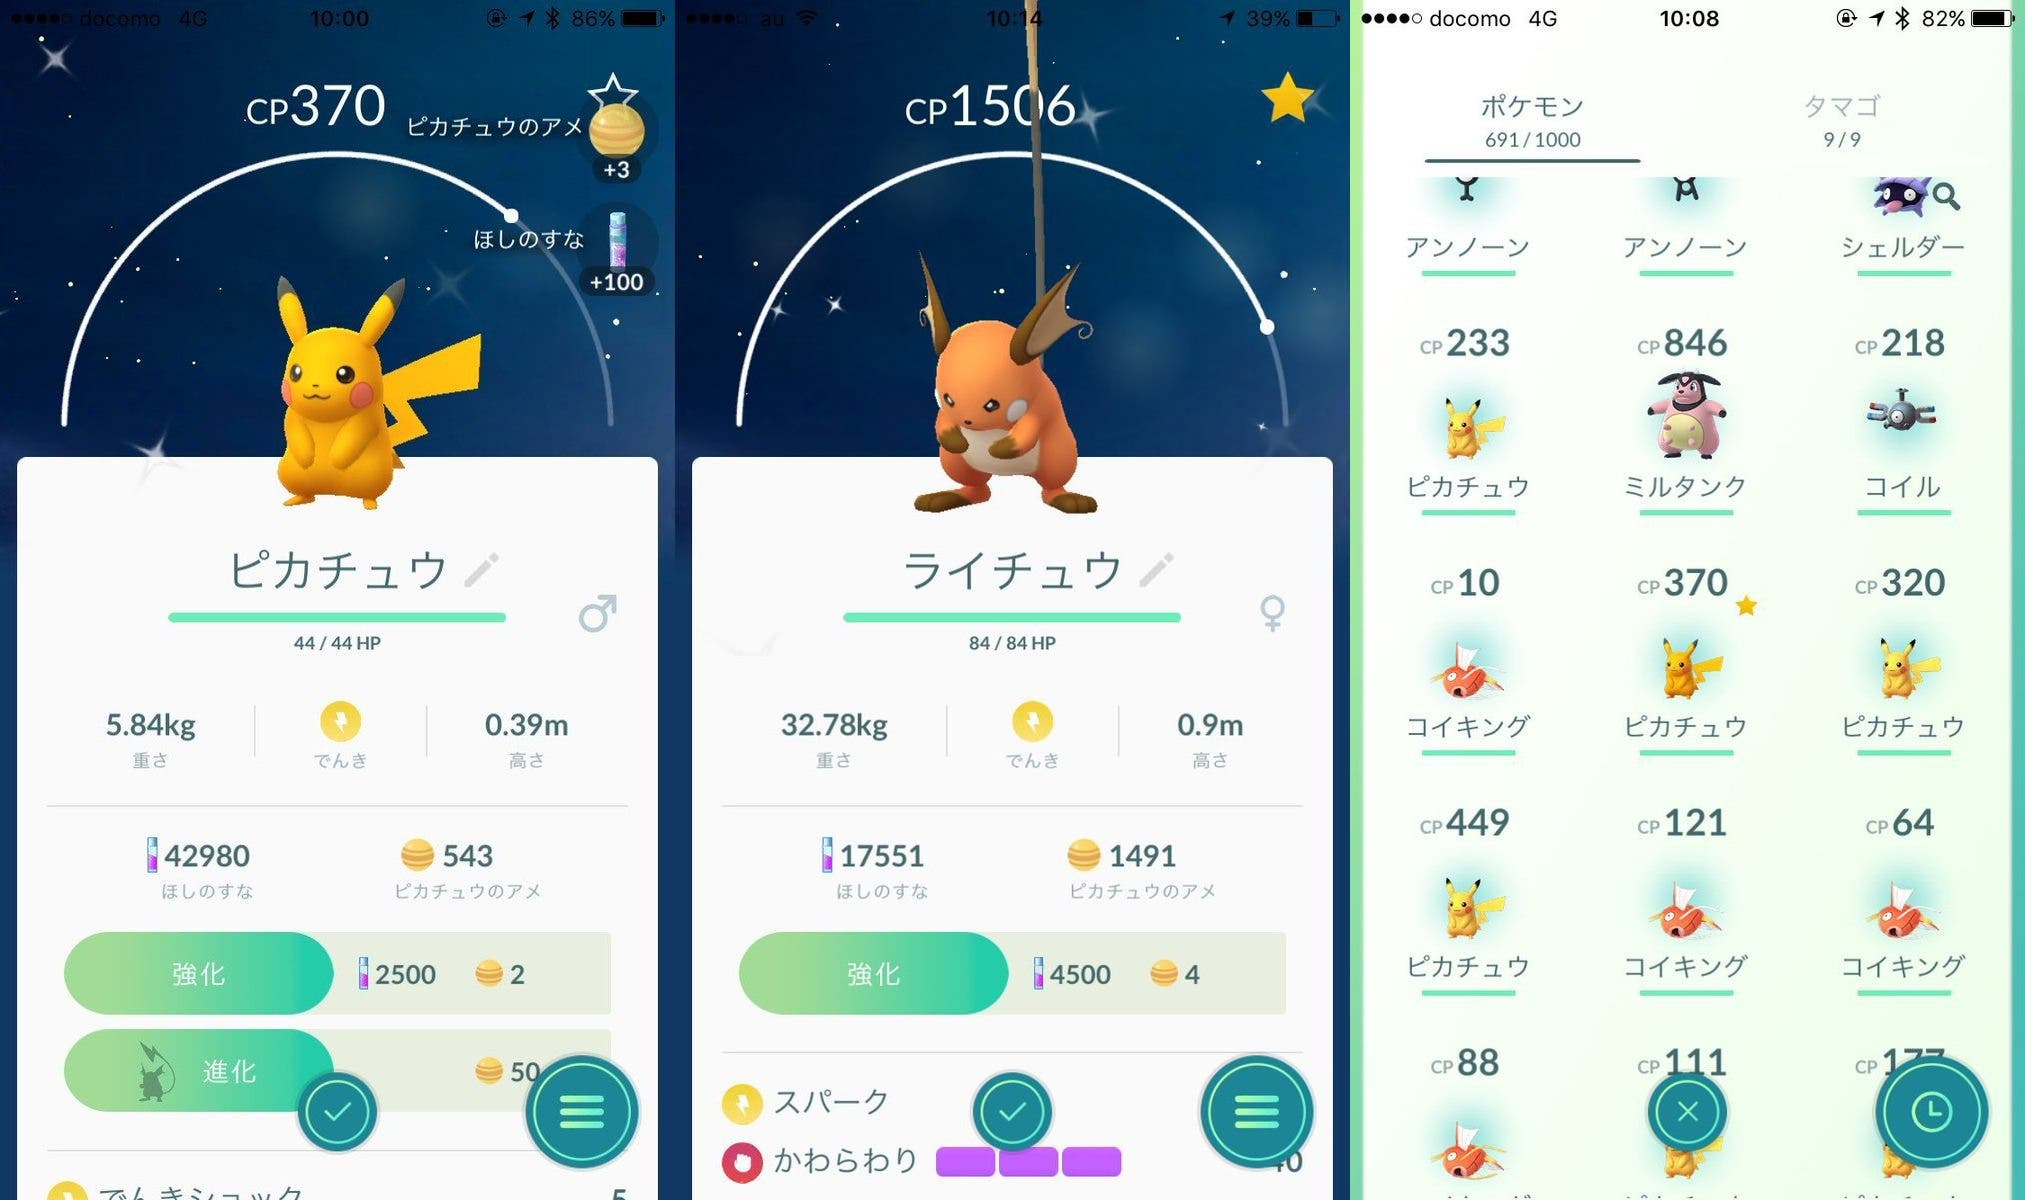 Un Pikachu Shiny se deja ver en un evento japonés de Pokémon GO